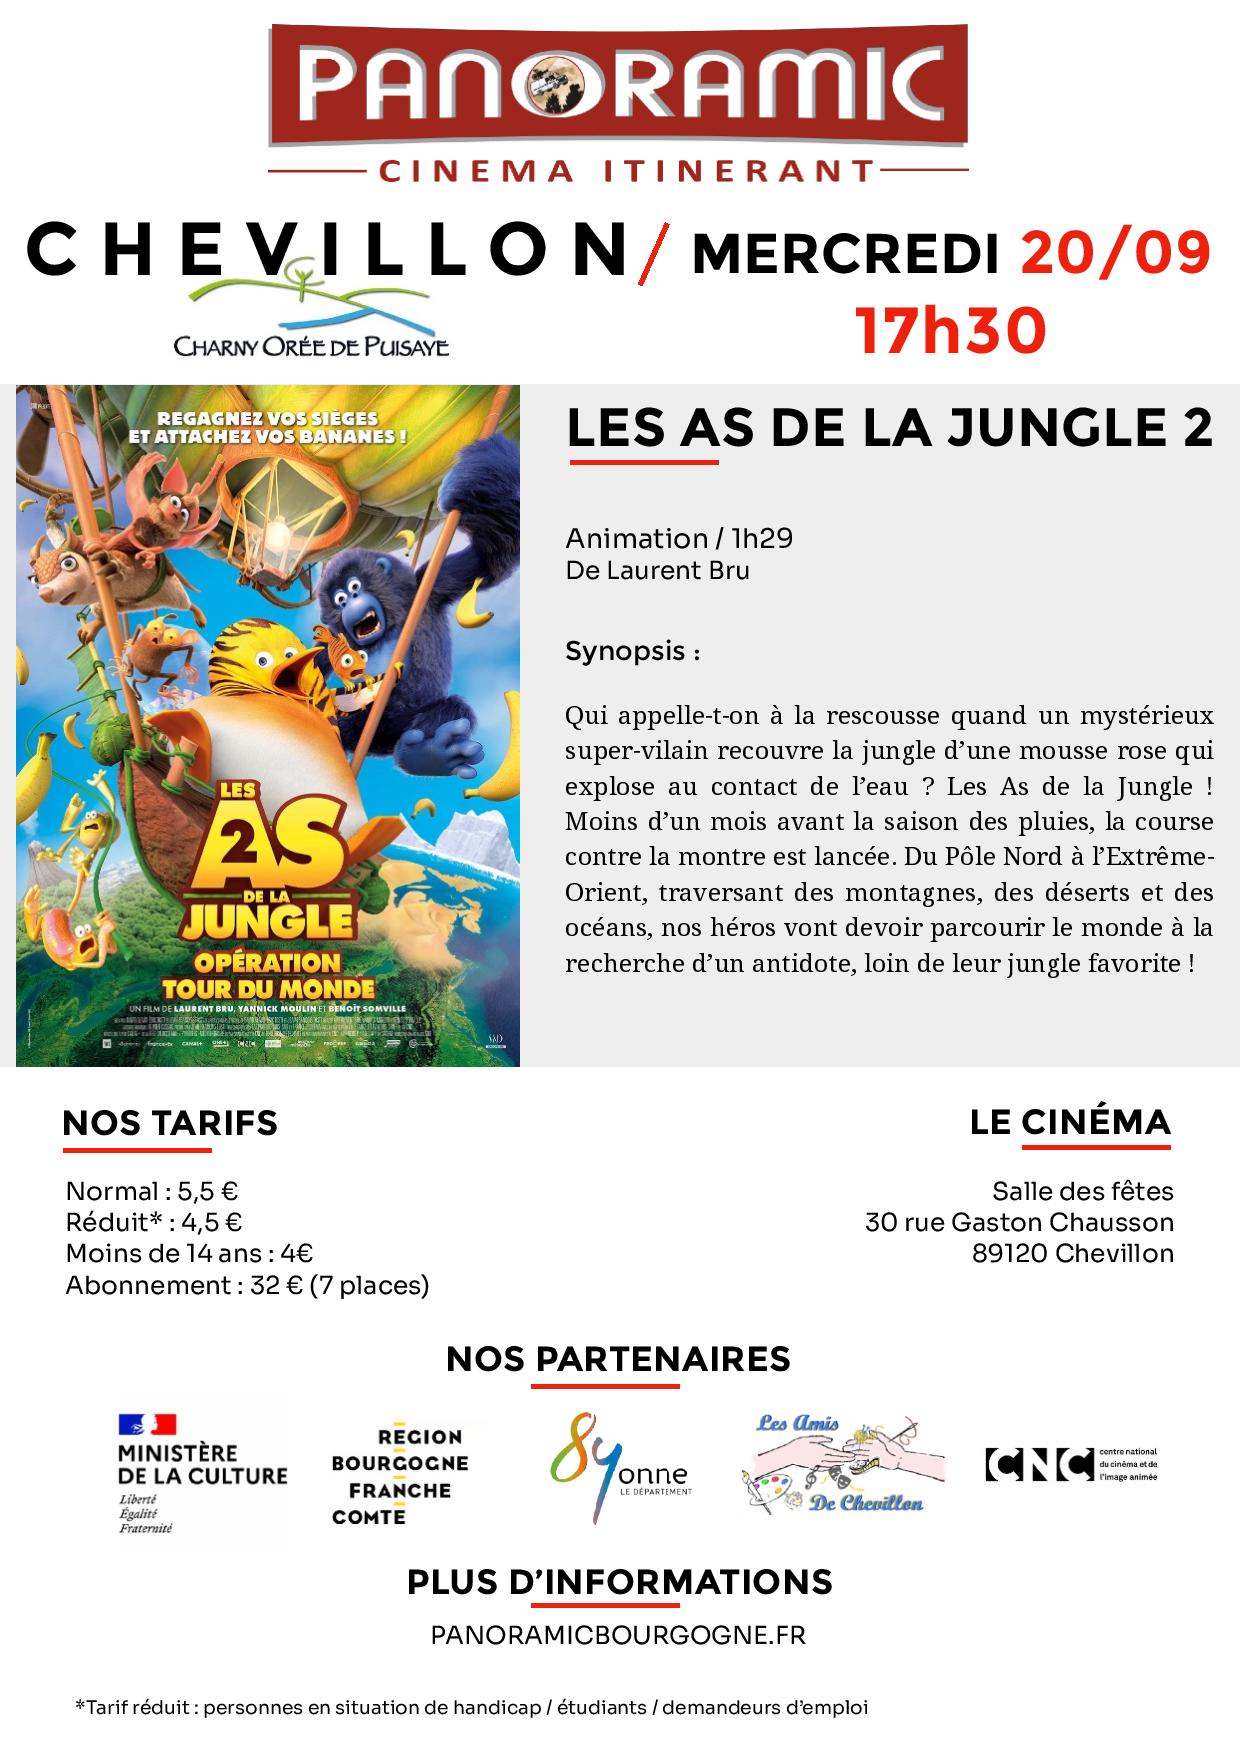 Le Cinéma Fait Sa Rentrée à Chevillon Charny Orée De Puisaye 